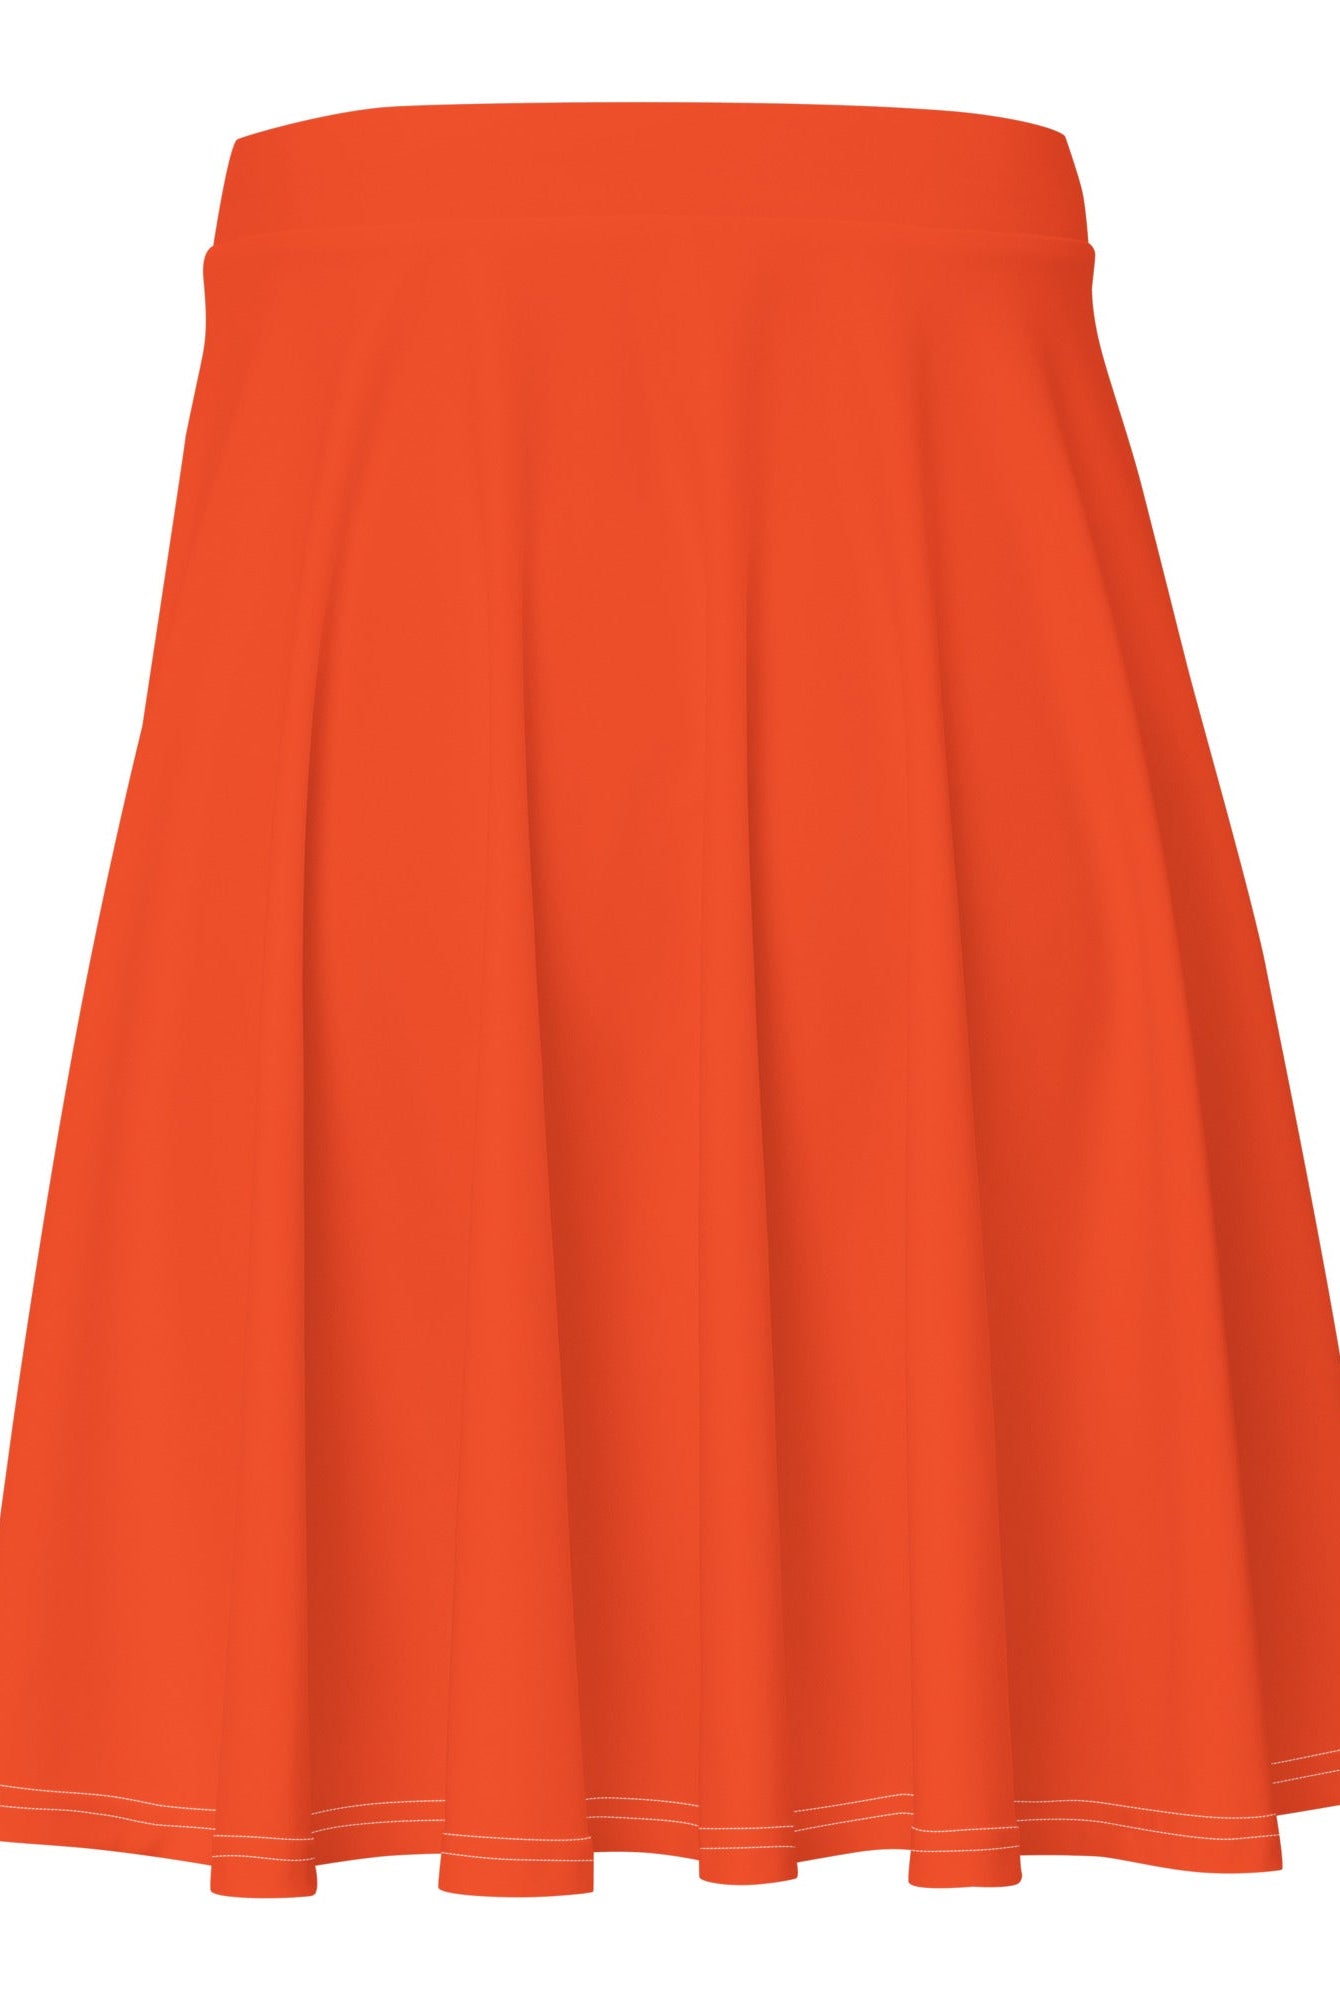 Outrageous Orange Skater Skirt - Skater Skirt - DRAGON FOXX™ - Outrageous Orange Skater Skirt - 6370605_9606 - XS - Outrageous Orange - Skater Skirt - Dragon Foxx™ - Dragon Foxx™ Outrageous Orange Skater Skirt - Dragon Foxx™ Outrageous Orange Skirt